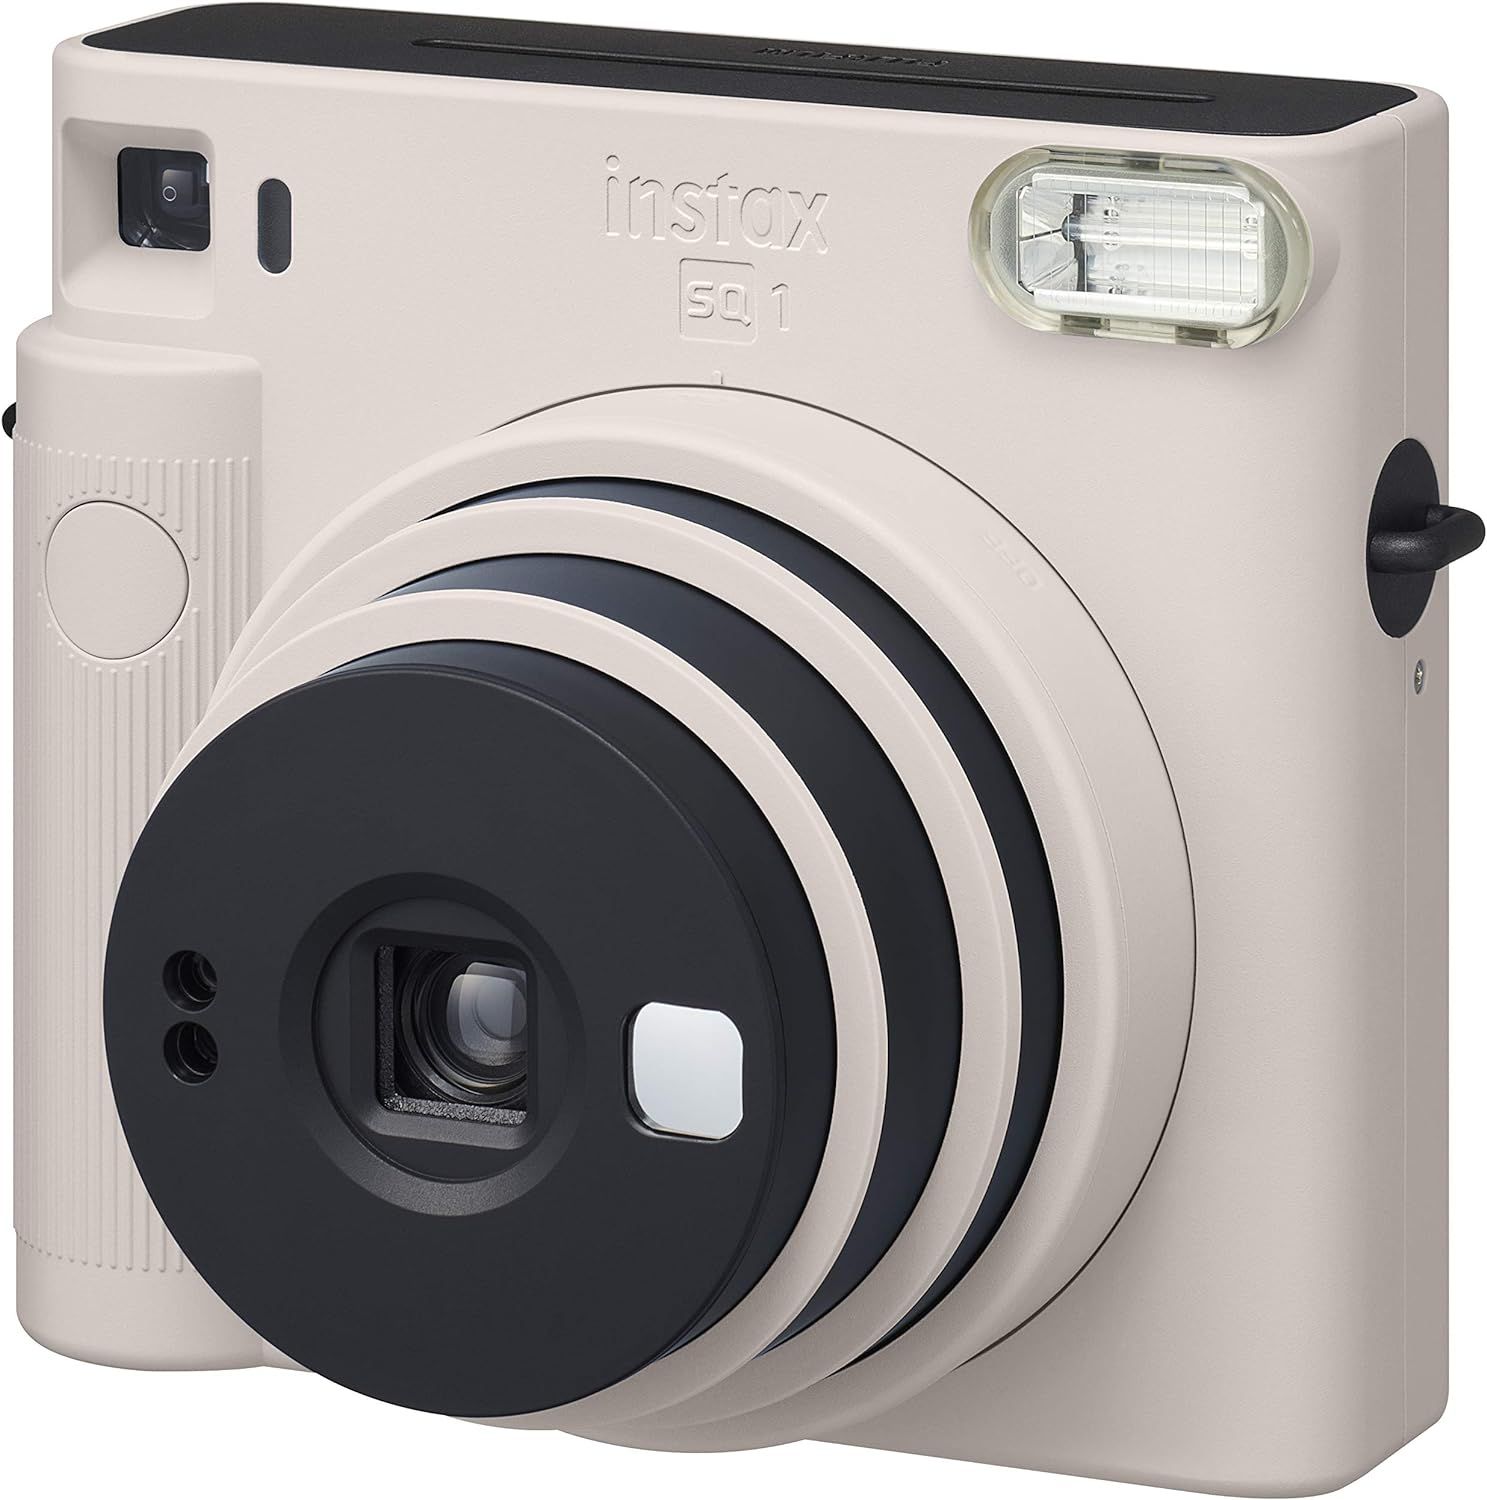 FUJIFILM Instax Square SQ1 Instant Camera, Chalk White, INS SQ 1 White | Amazon (US)